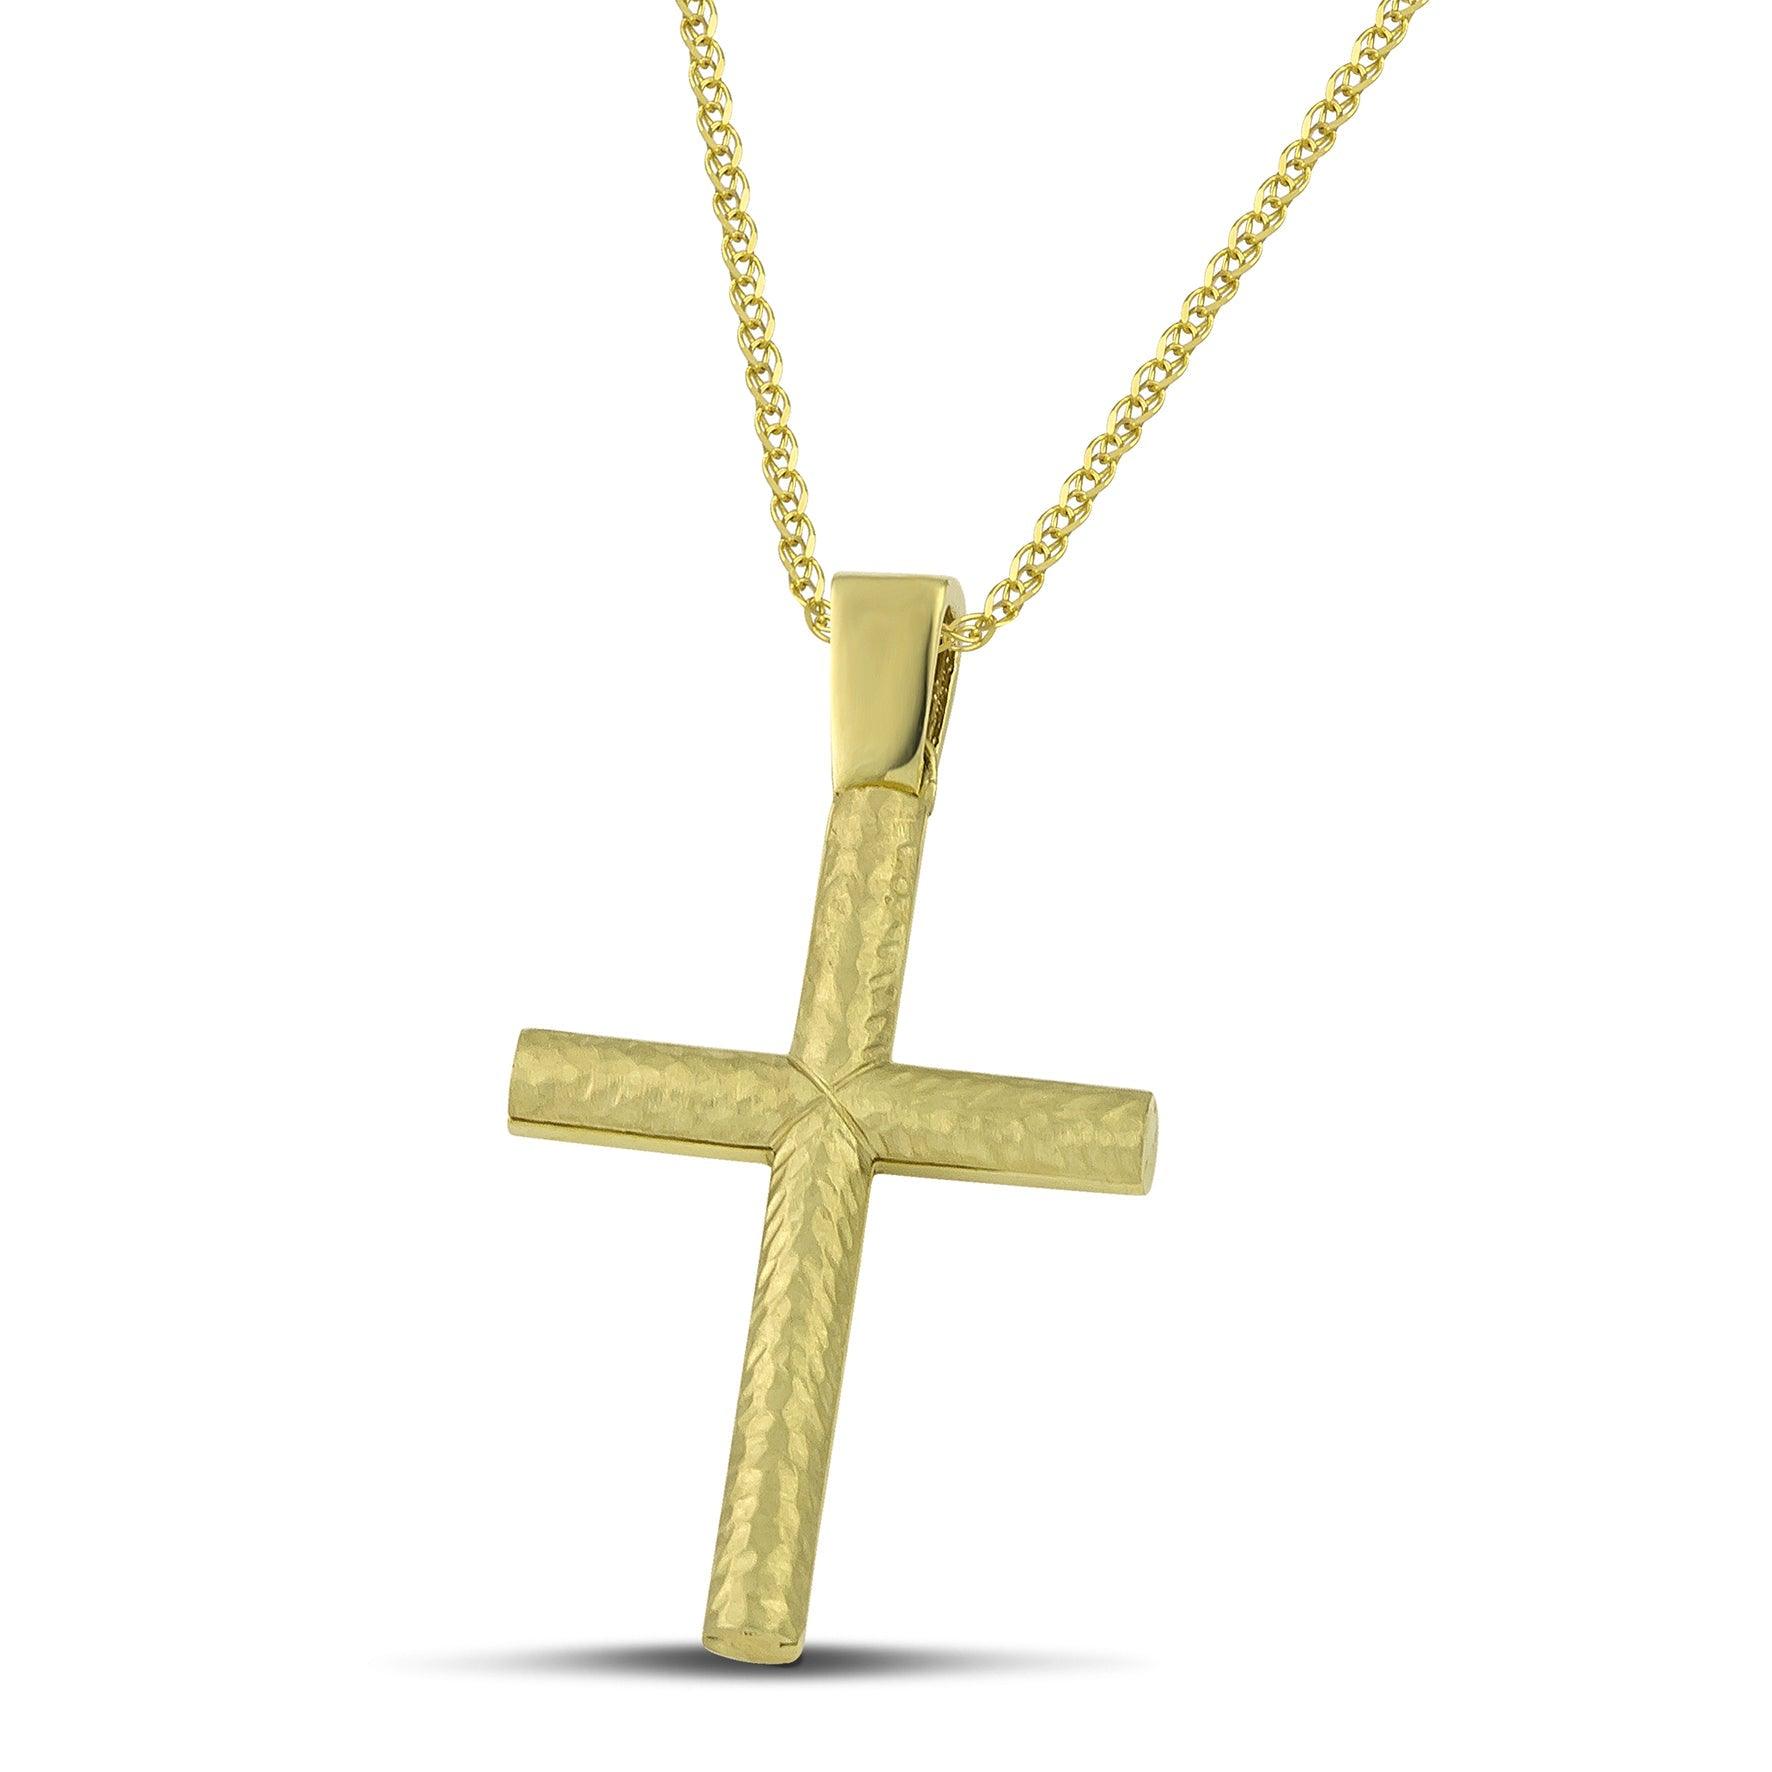 Σταυρός βάπτισης από χρυσό Κ14 για αγόρι, διπλής όψης, με πλεκτή αλυσίδα. 